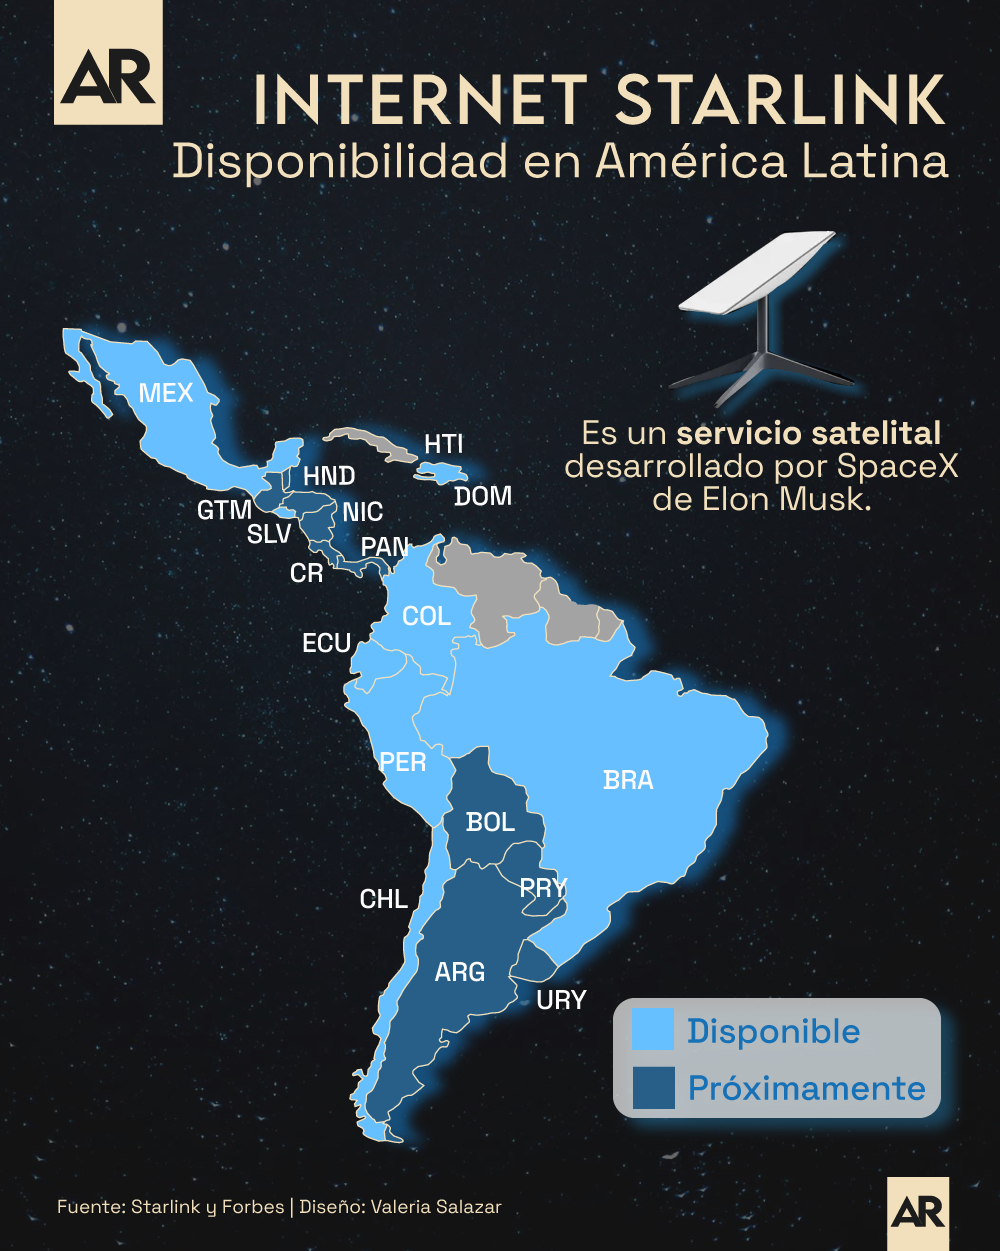 Internet Starlink: ¿En cuáles países de América Latina está disponible?